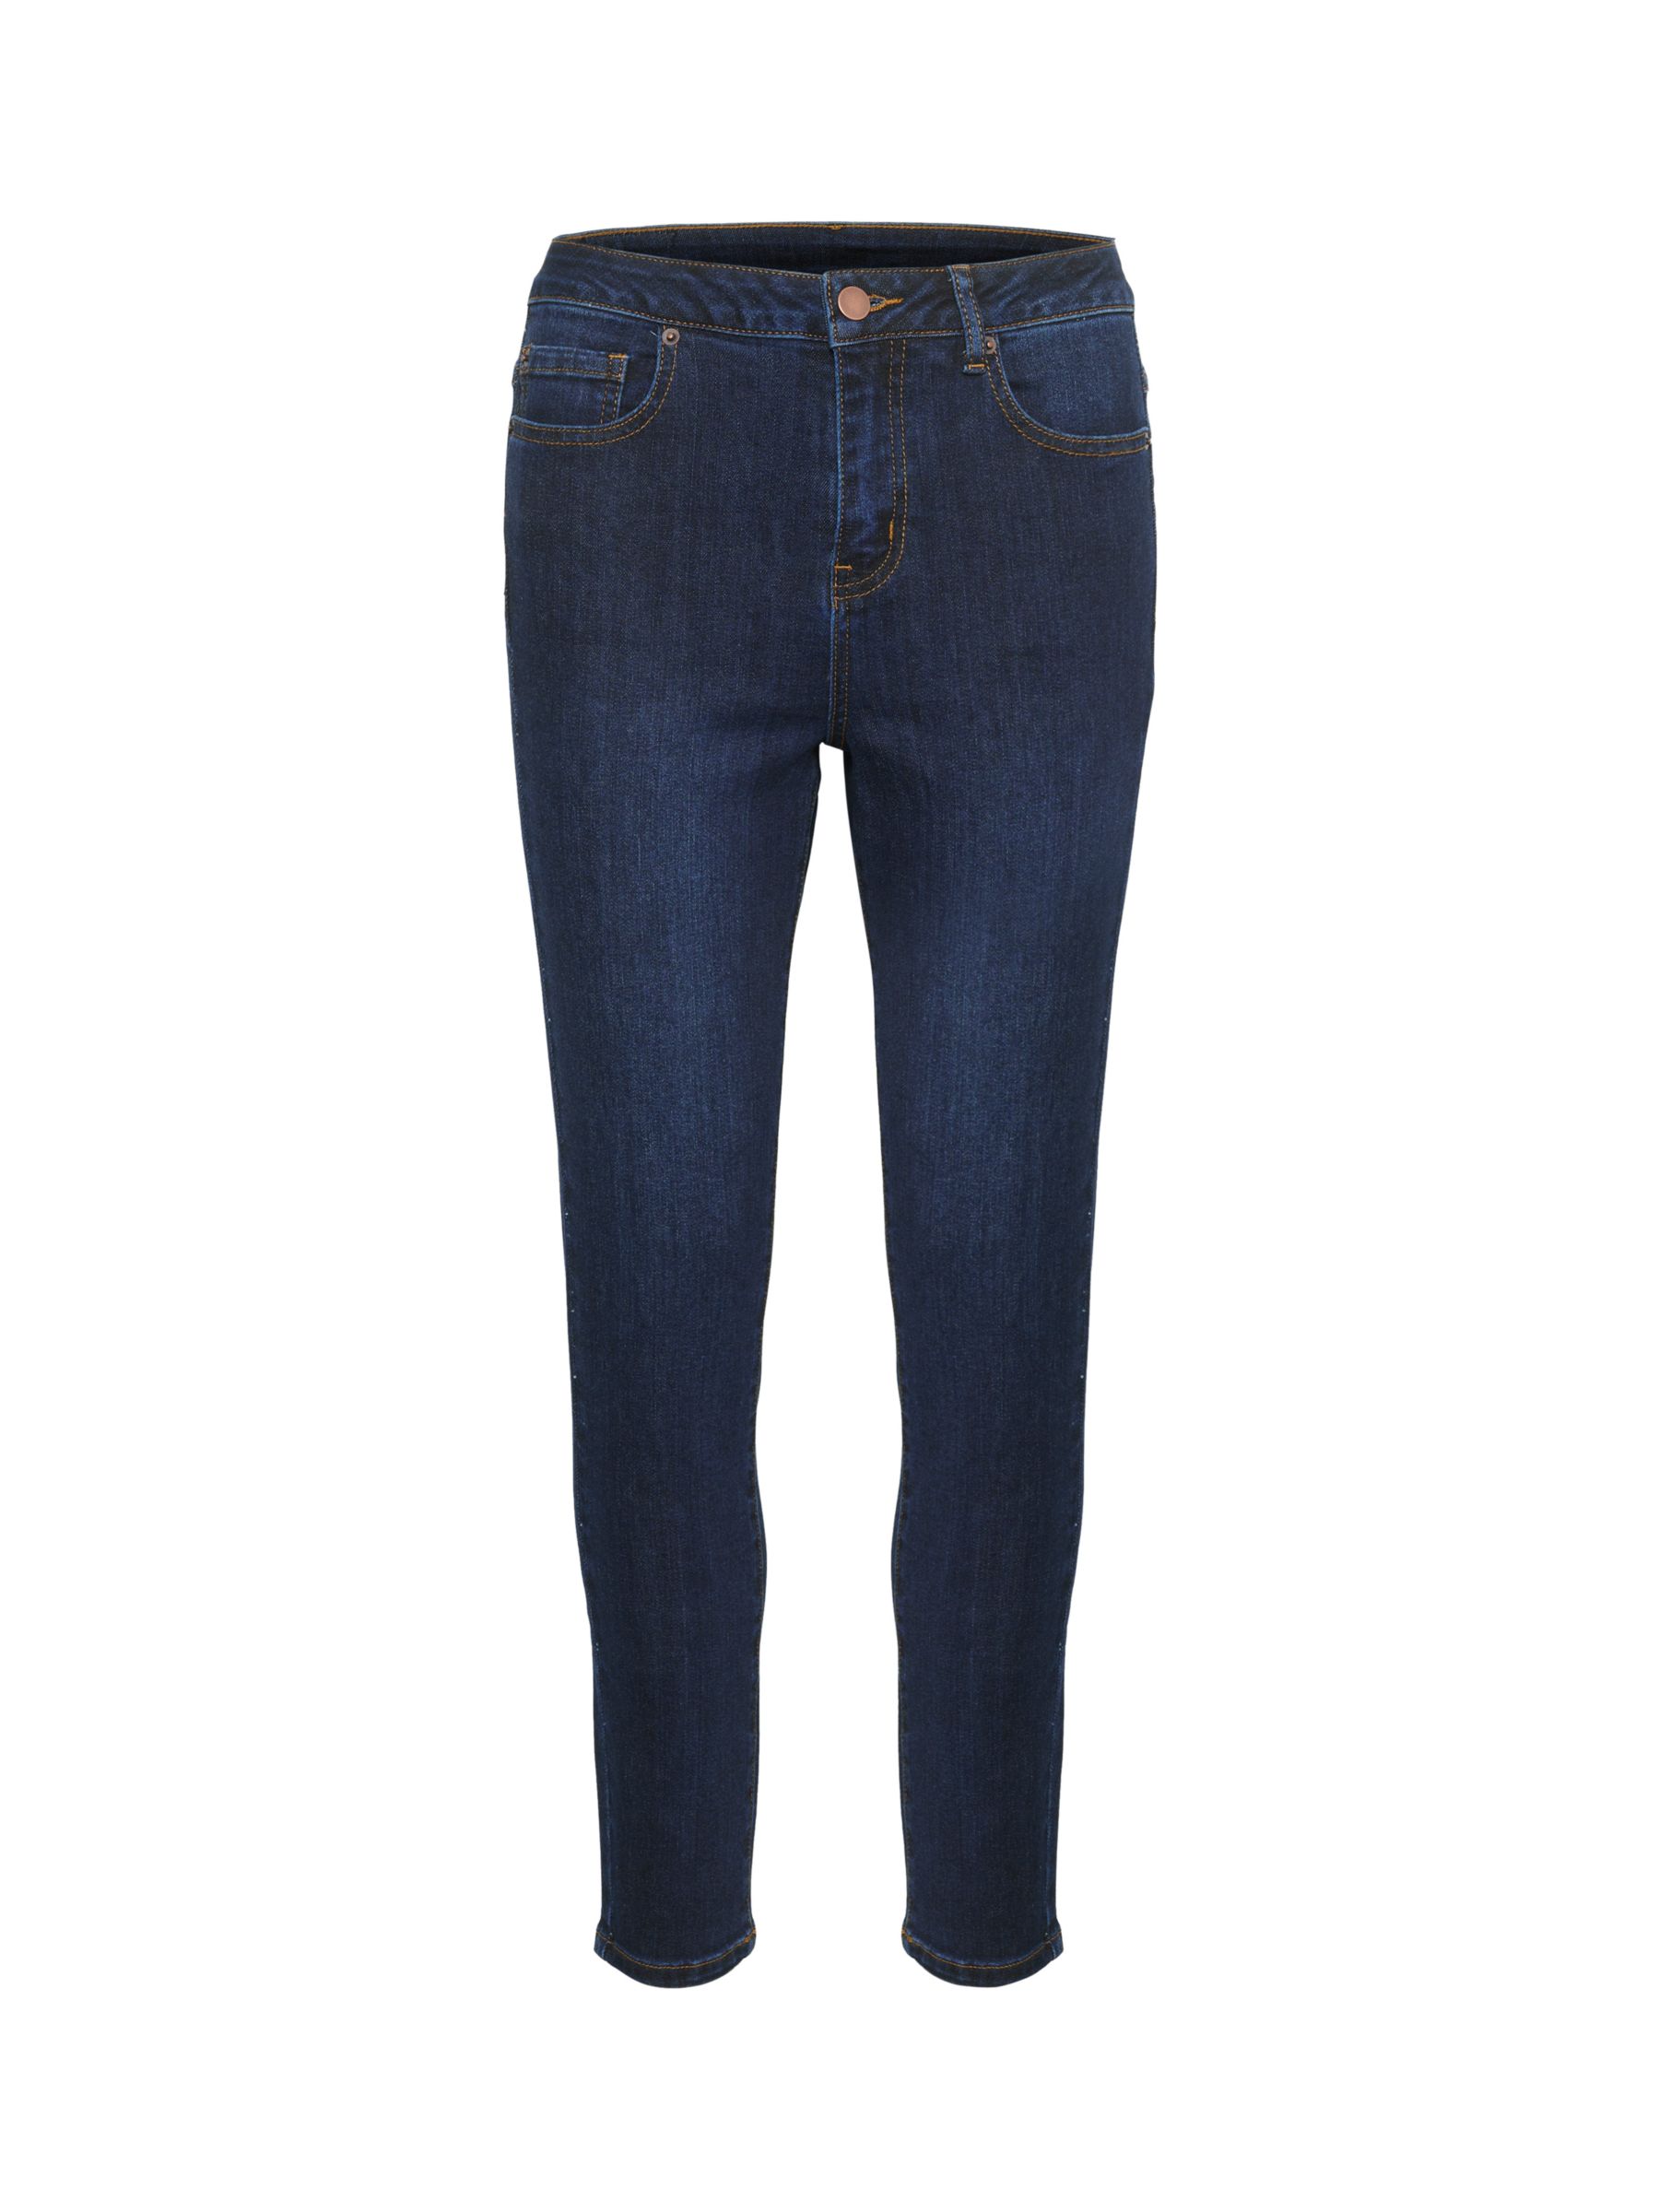 KAFFE Sinem High Waisted Jeans, Dark Blue Denim at John Lewis & Partners